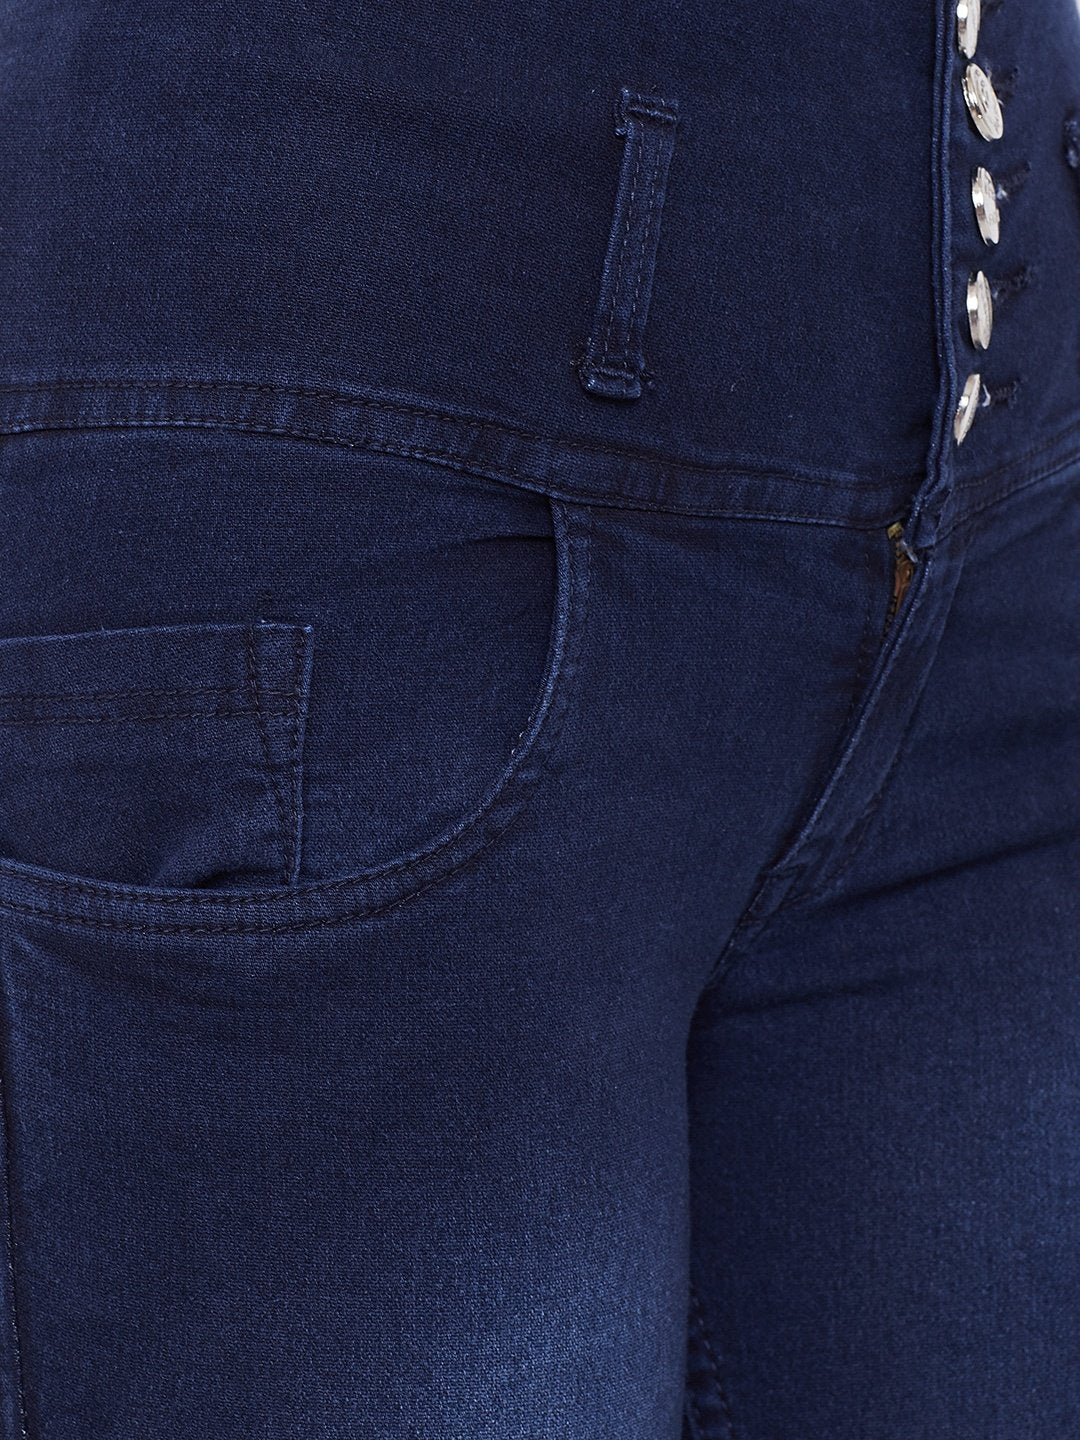 High Waist 5 button Blue Jeans - NiftyJeans